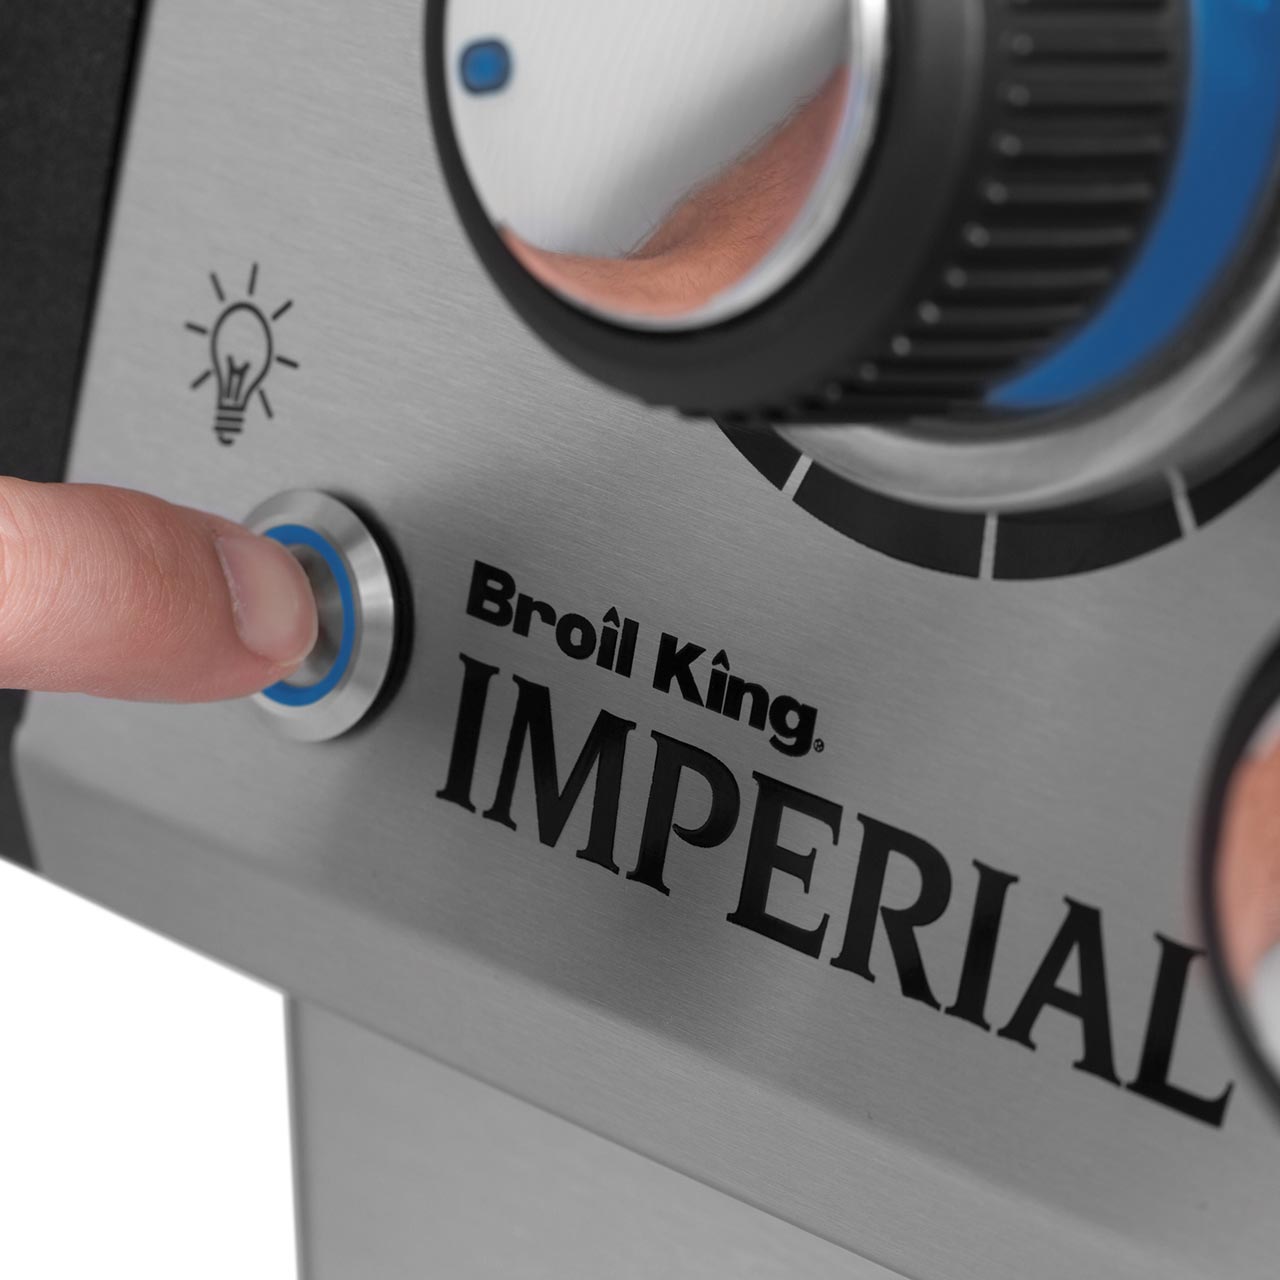 Broil King Imperial S 590 IR - inkl. Drehspießset - Modell 2021, Heckbrenner 4,4 kW, 5 Edelstahlbrenner a 3,2 kW, Flav-R-Wave System